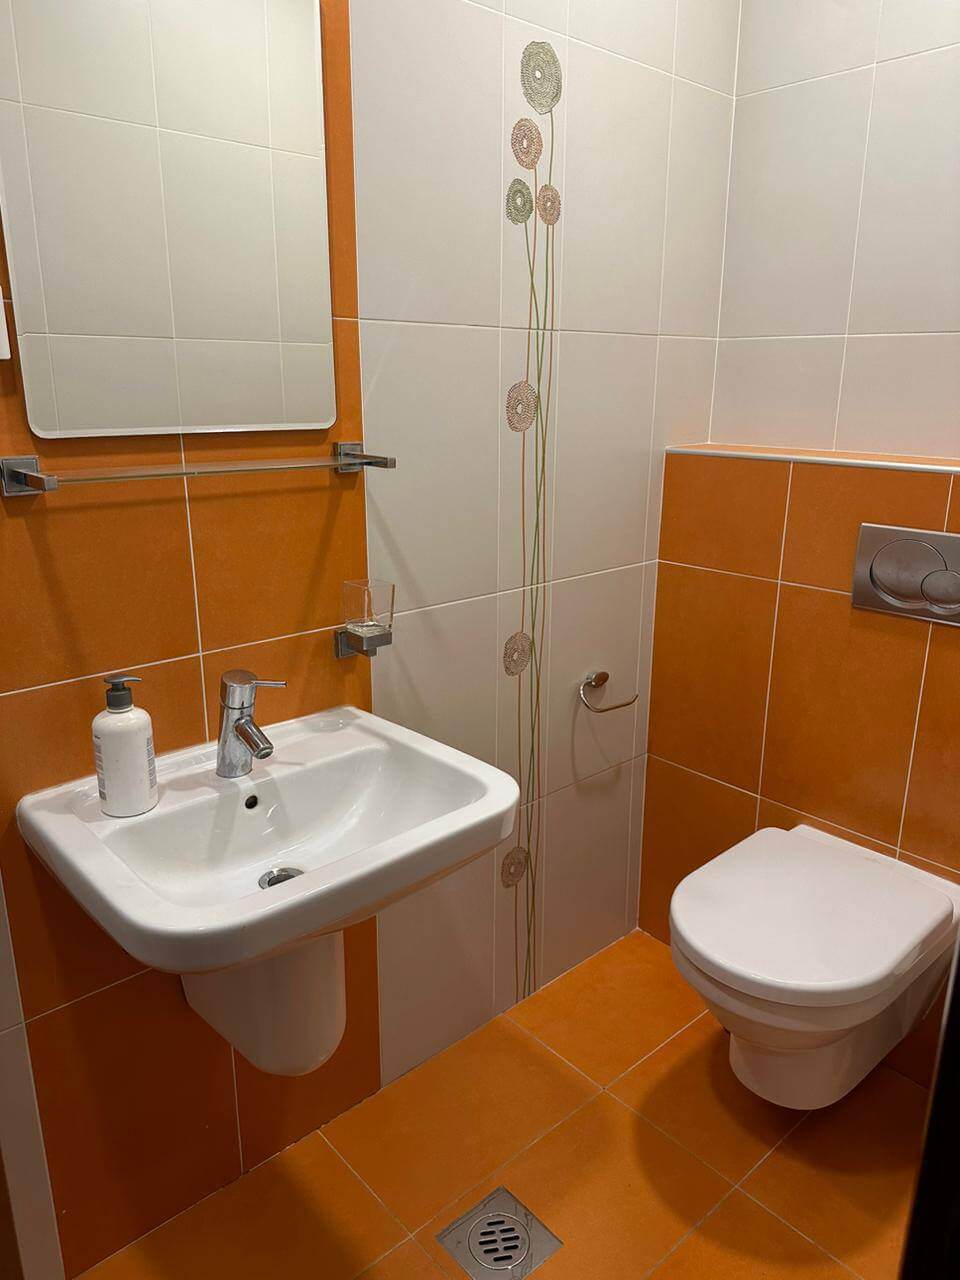 Купить 3-х комнатную квартиру в Будве: вторая туалетная комната